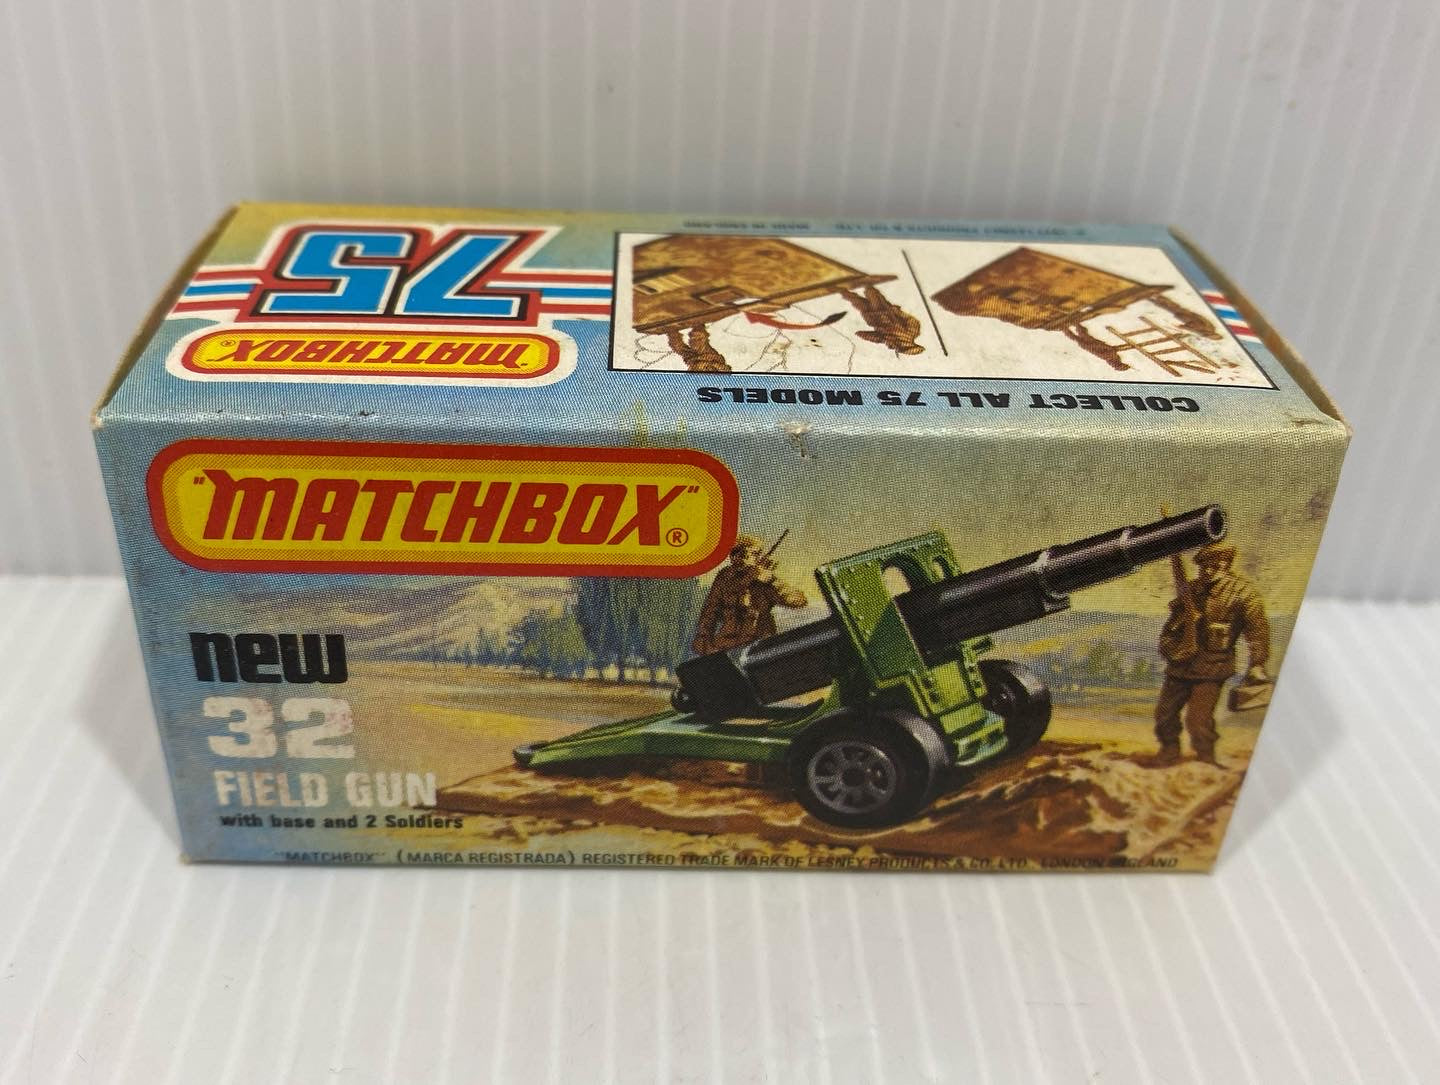 Field gun - Matchbox MB32 1978-1980. With original box